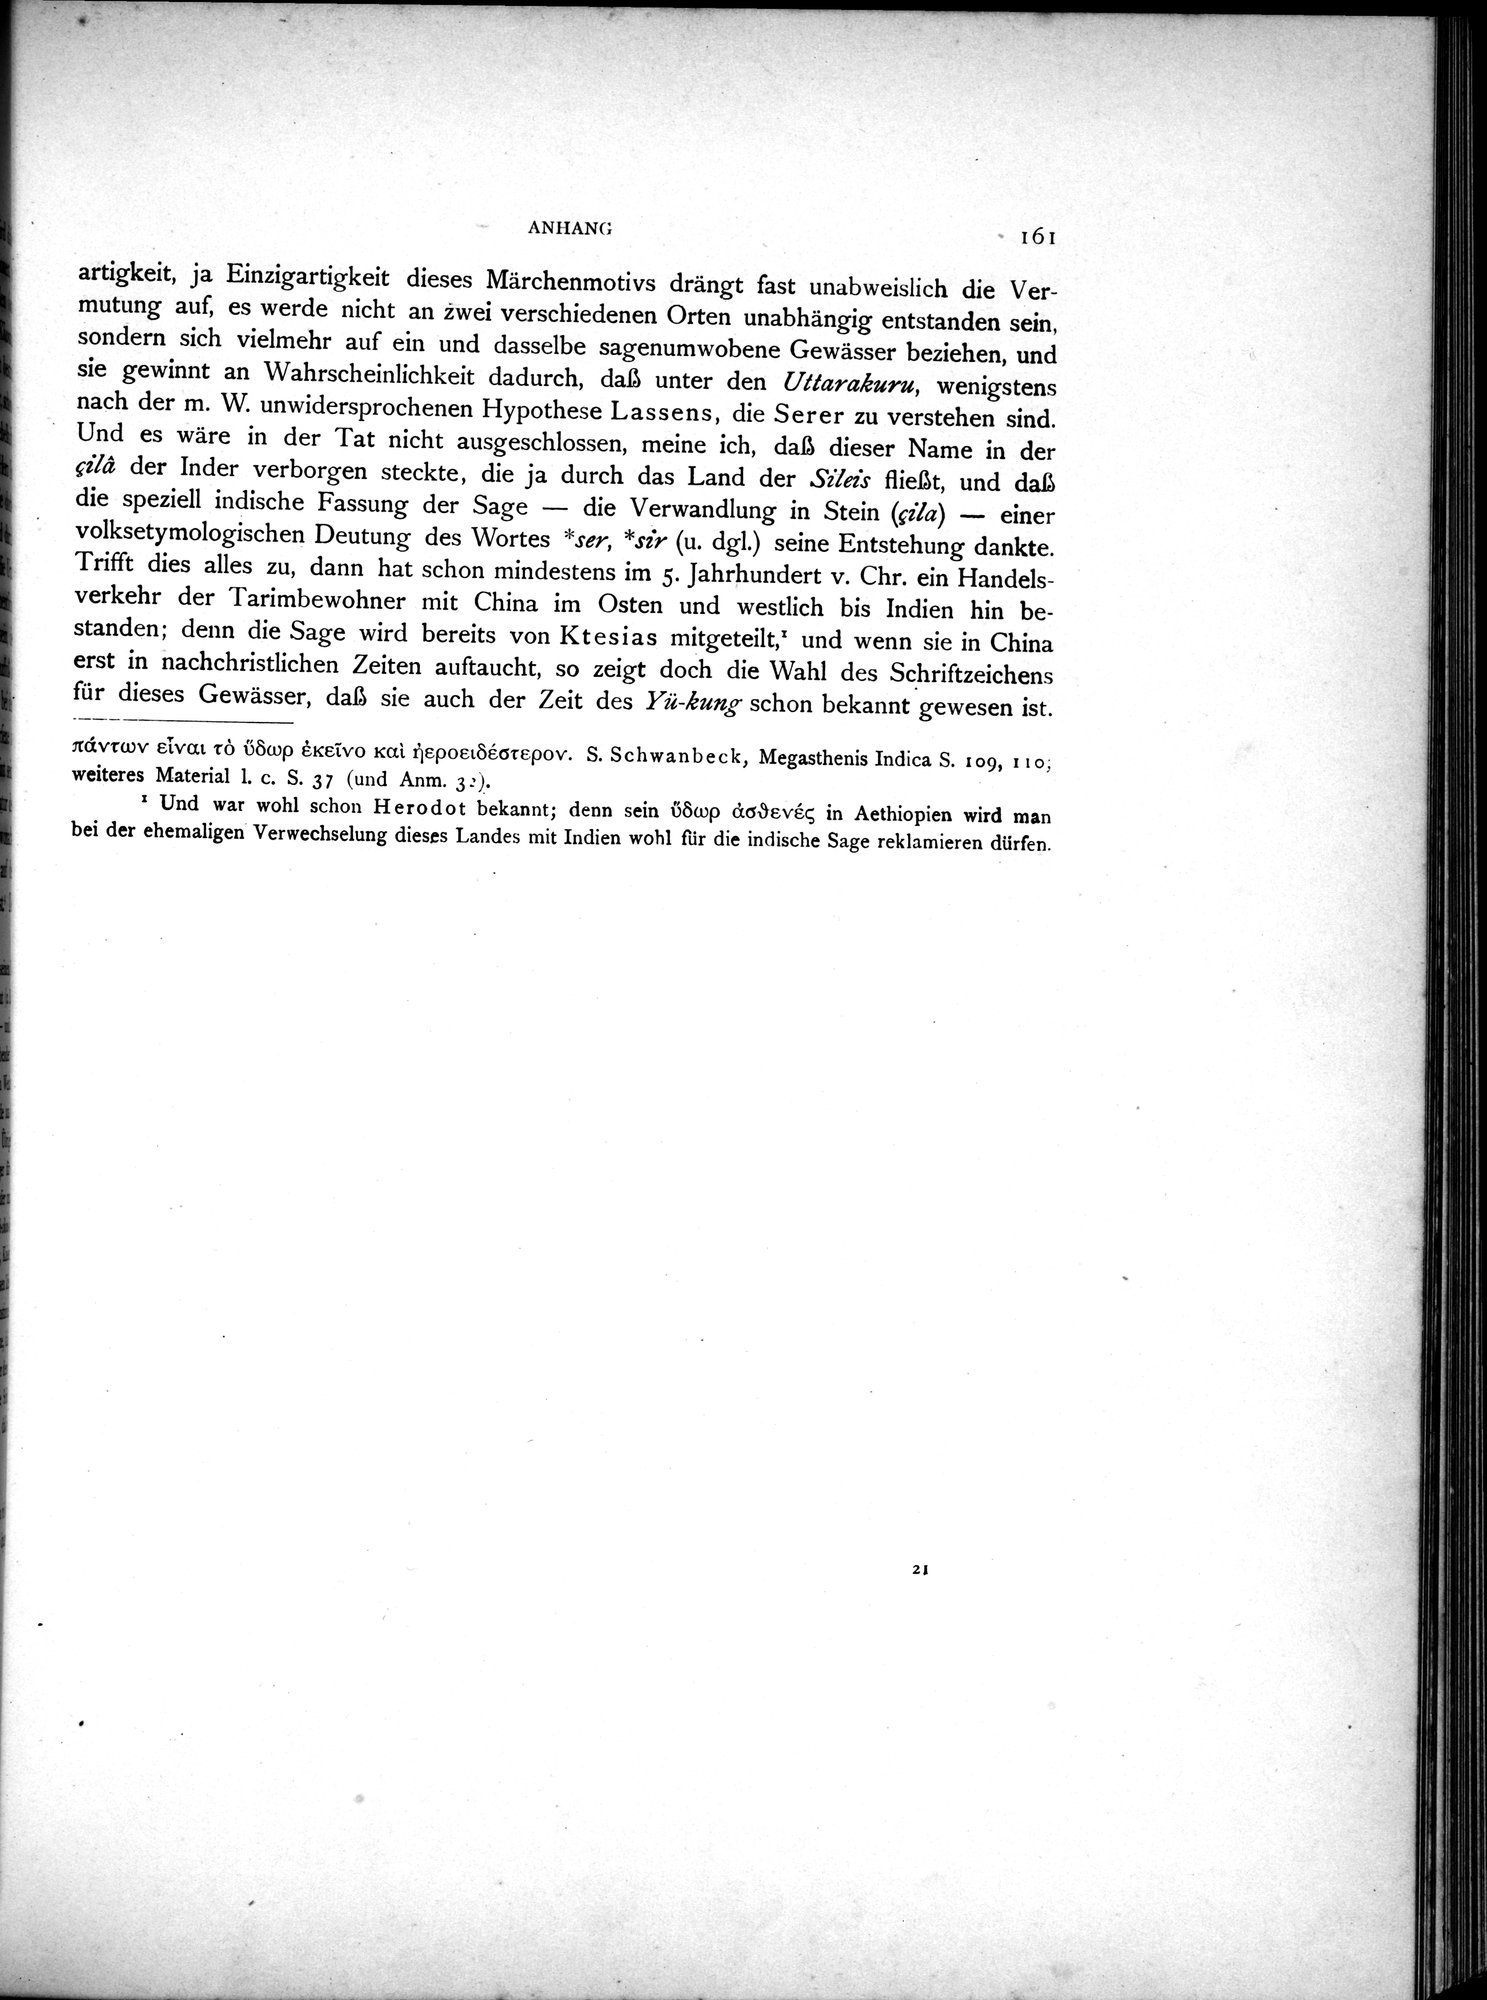 Die Chinesischen Handschriften- und sonstigen Kleinfunde Sven Hedins in Lou-lan : vol.1 / Page 185 (Grayscale High Resolution Image)